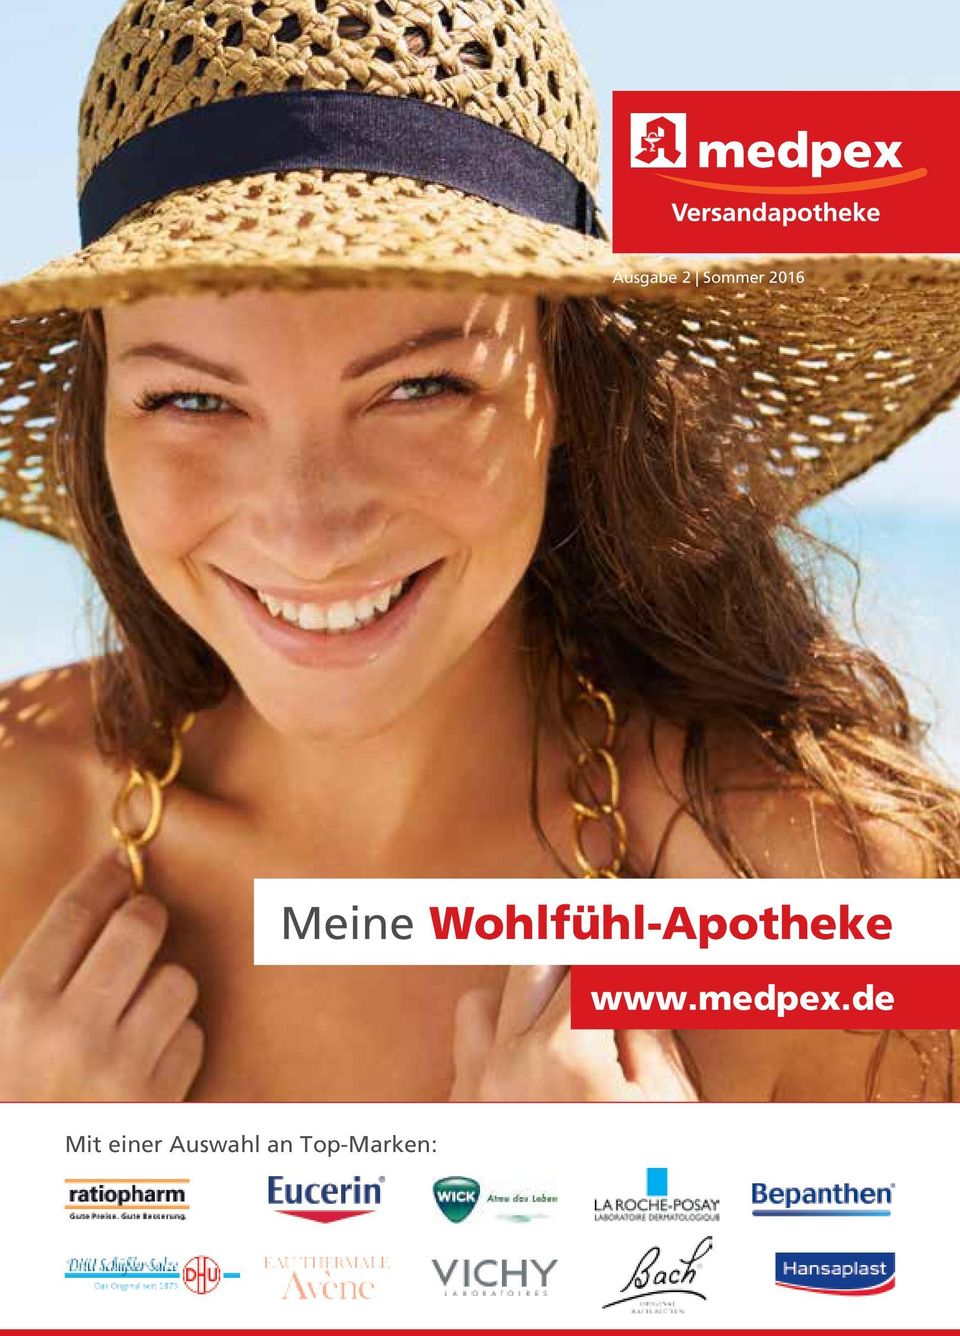 Wohlfühl-Apotheke www.